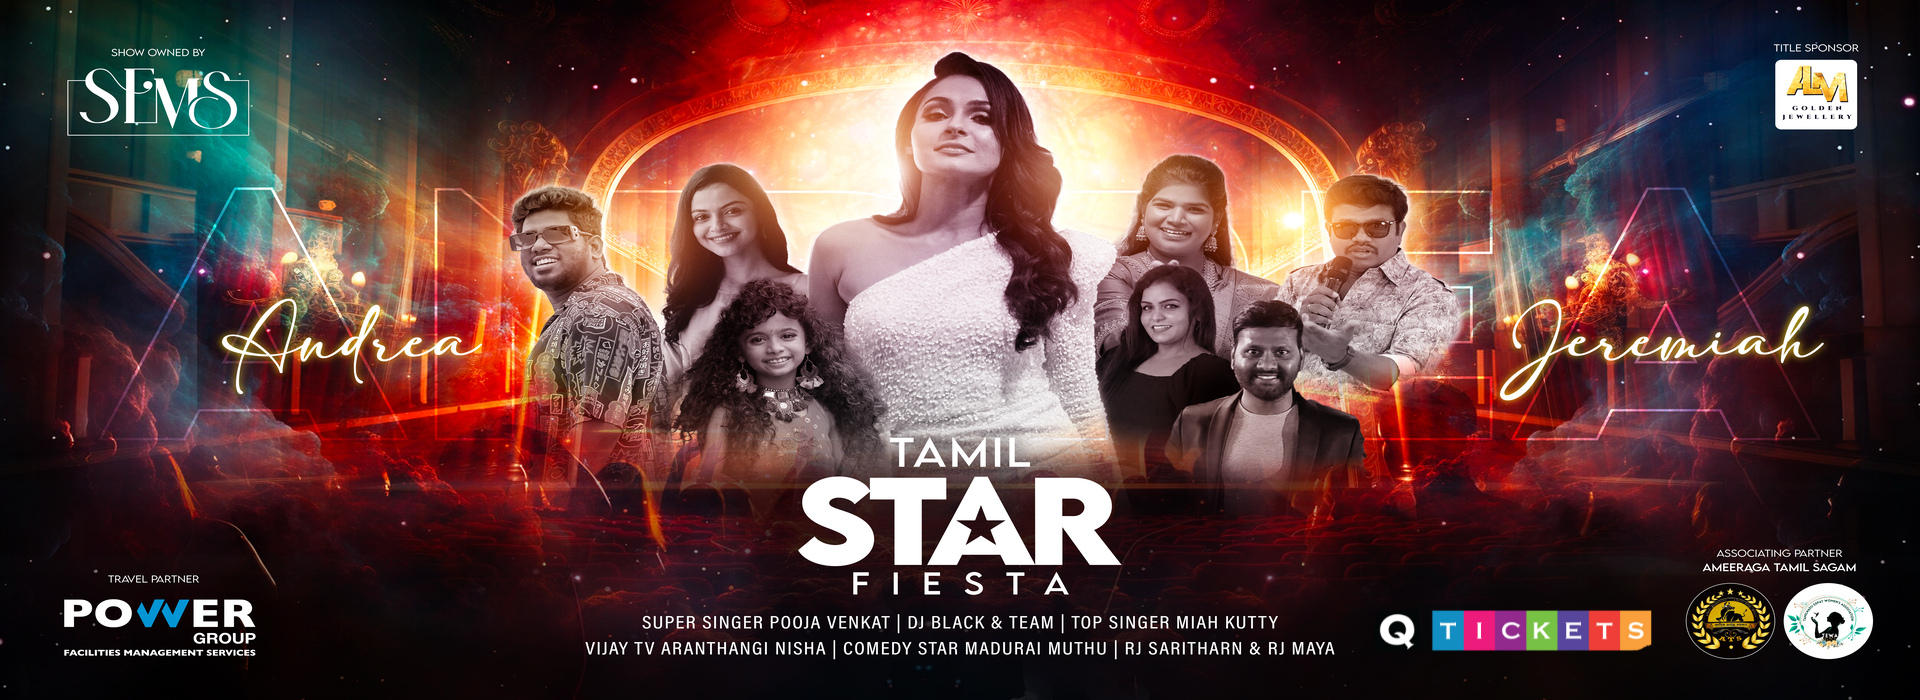 Tamil star fiesta | Just Dubai